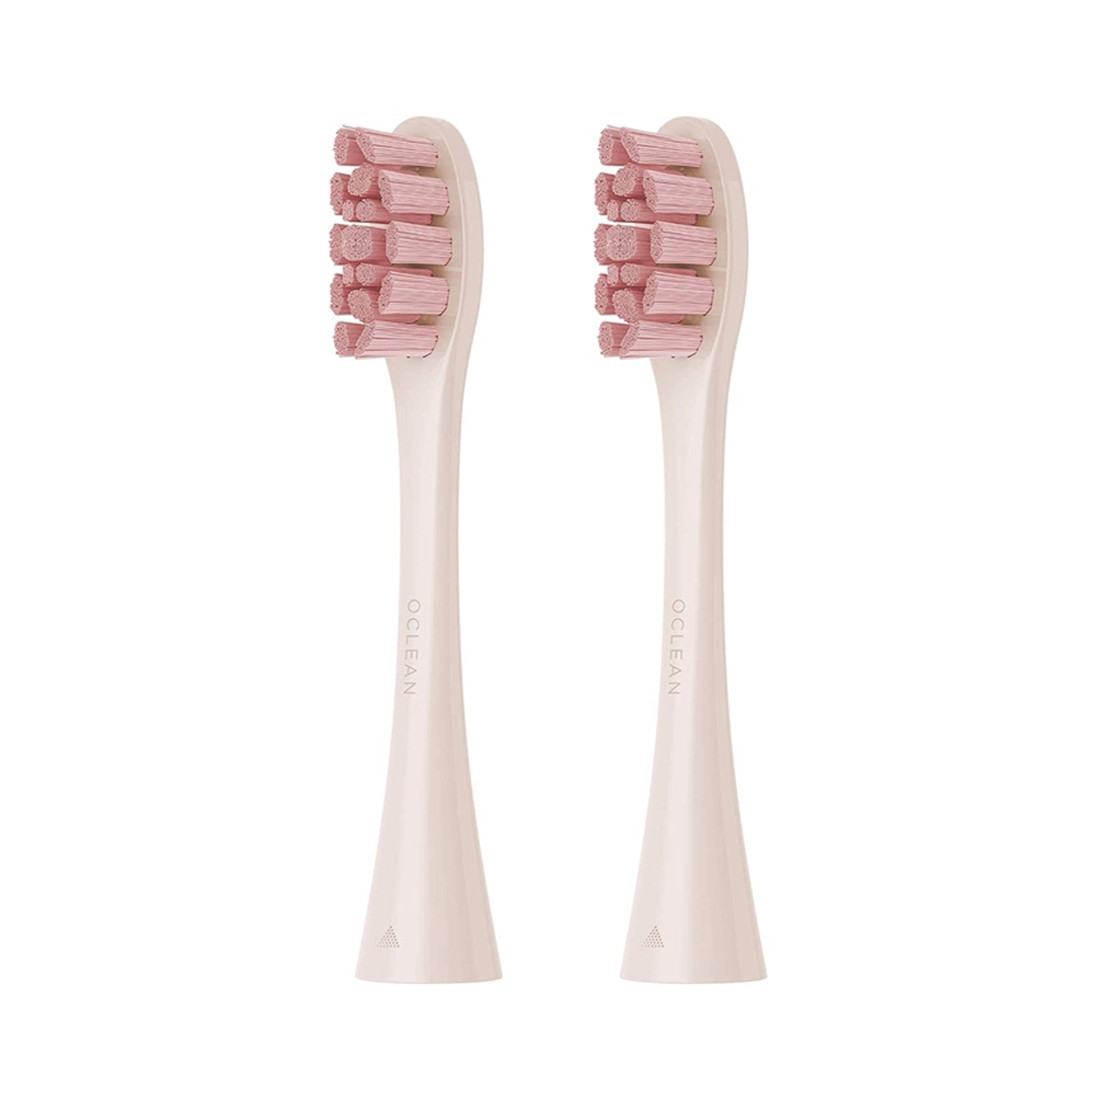 Сменные зубные щетки, Oclean, PW03 Pink, для Oclean Z1 и Oclean X Pro, 2 шт, Розовый